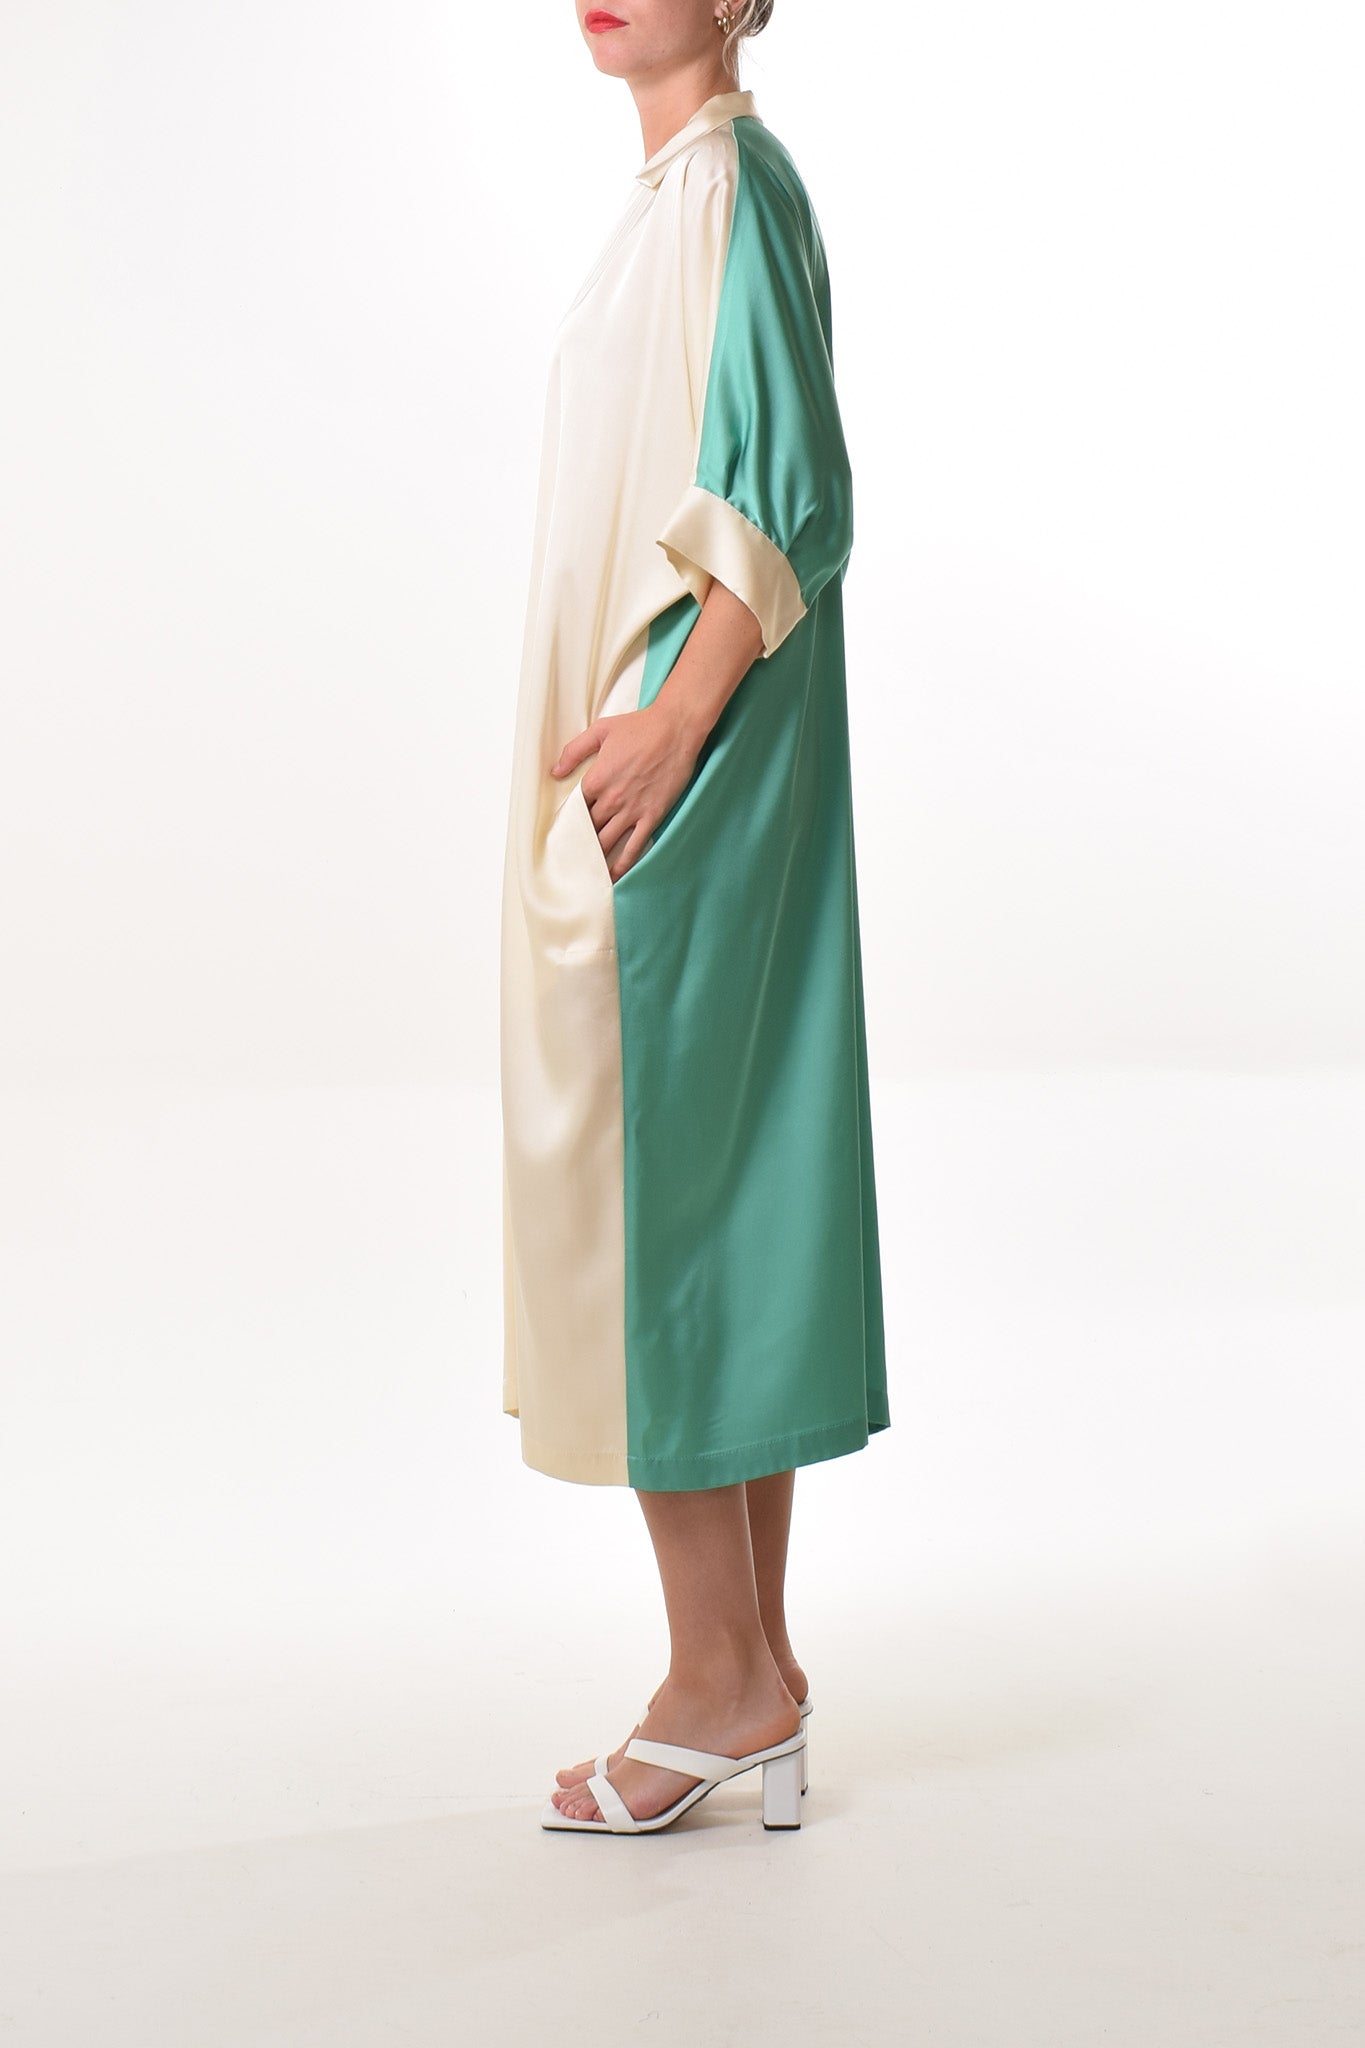 Tavira dress in Ecru/Green